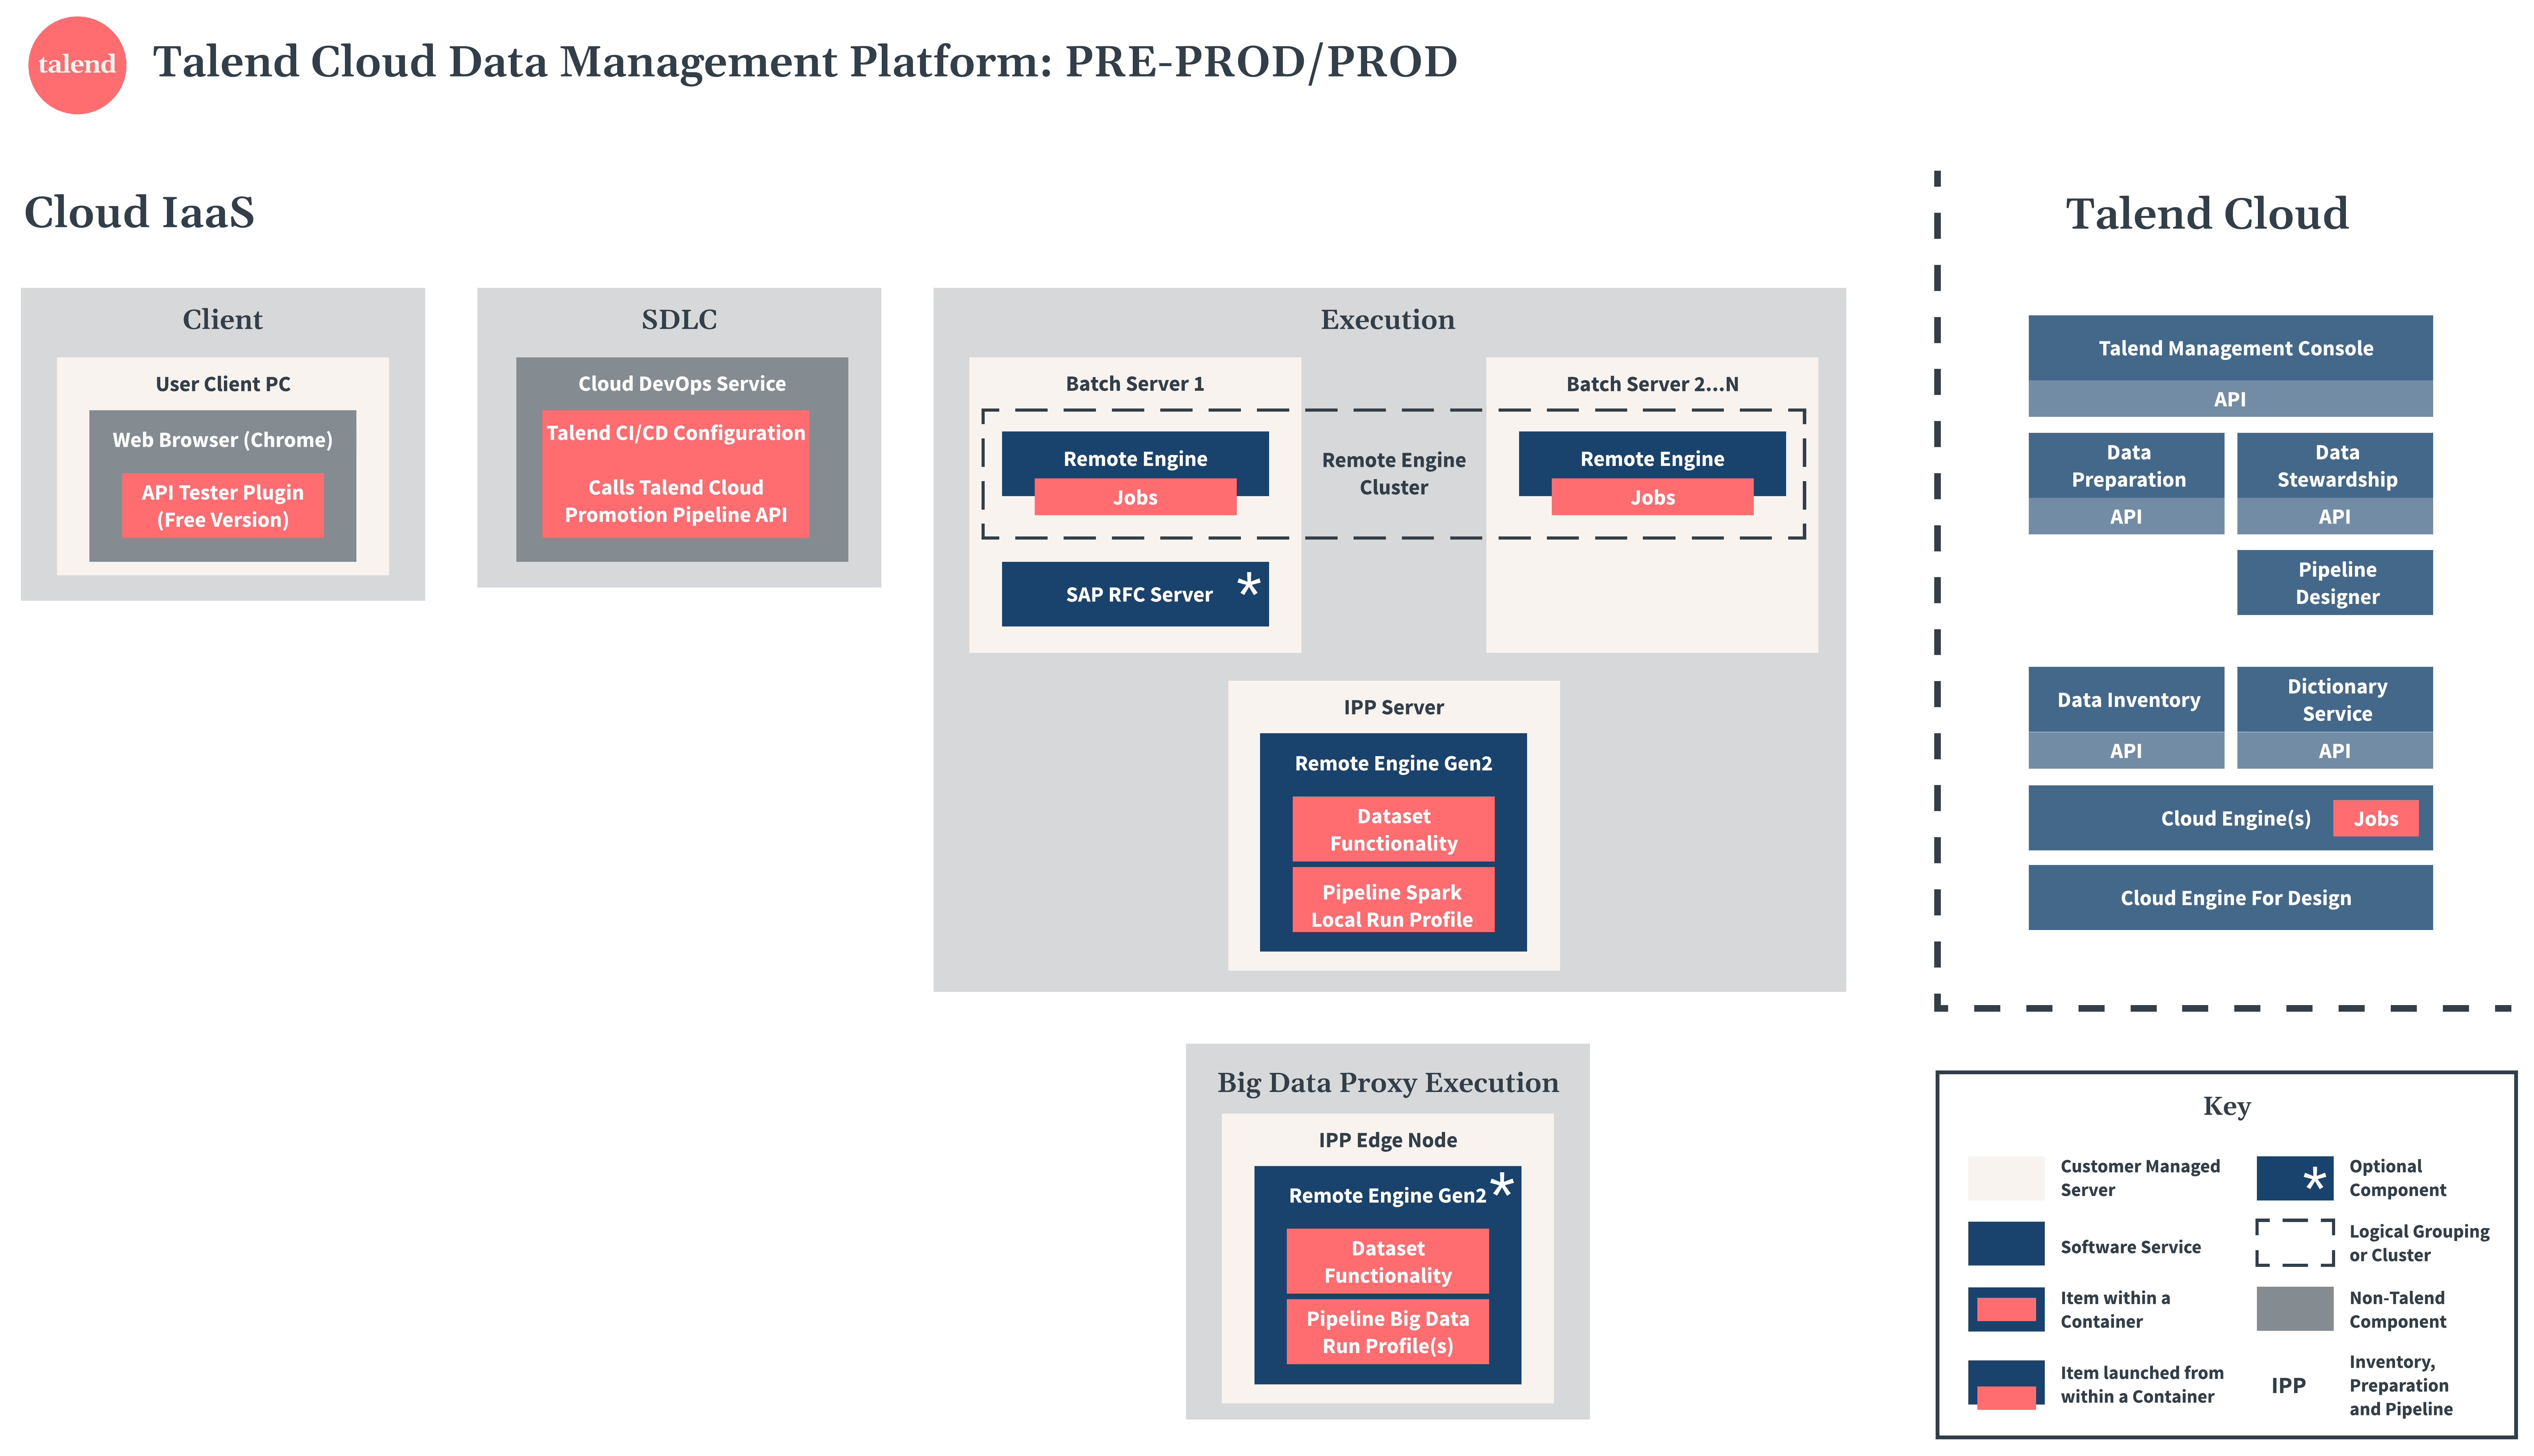 Talend Cloud Data Management Platform Diagramm zu Vorproduktion und Produktion.